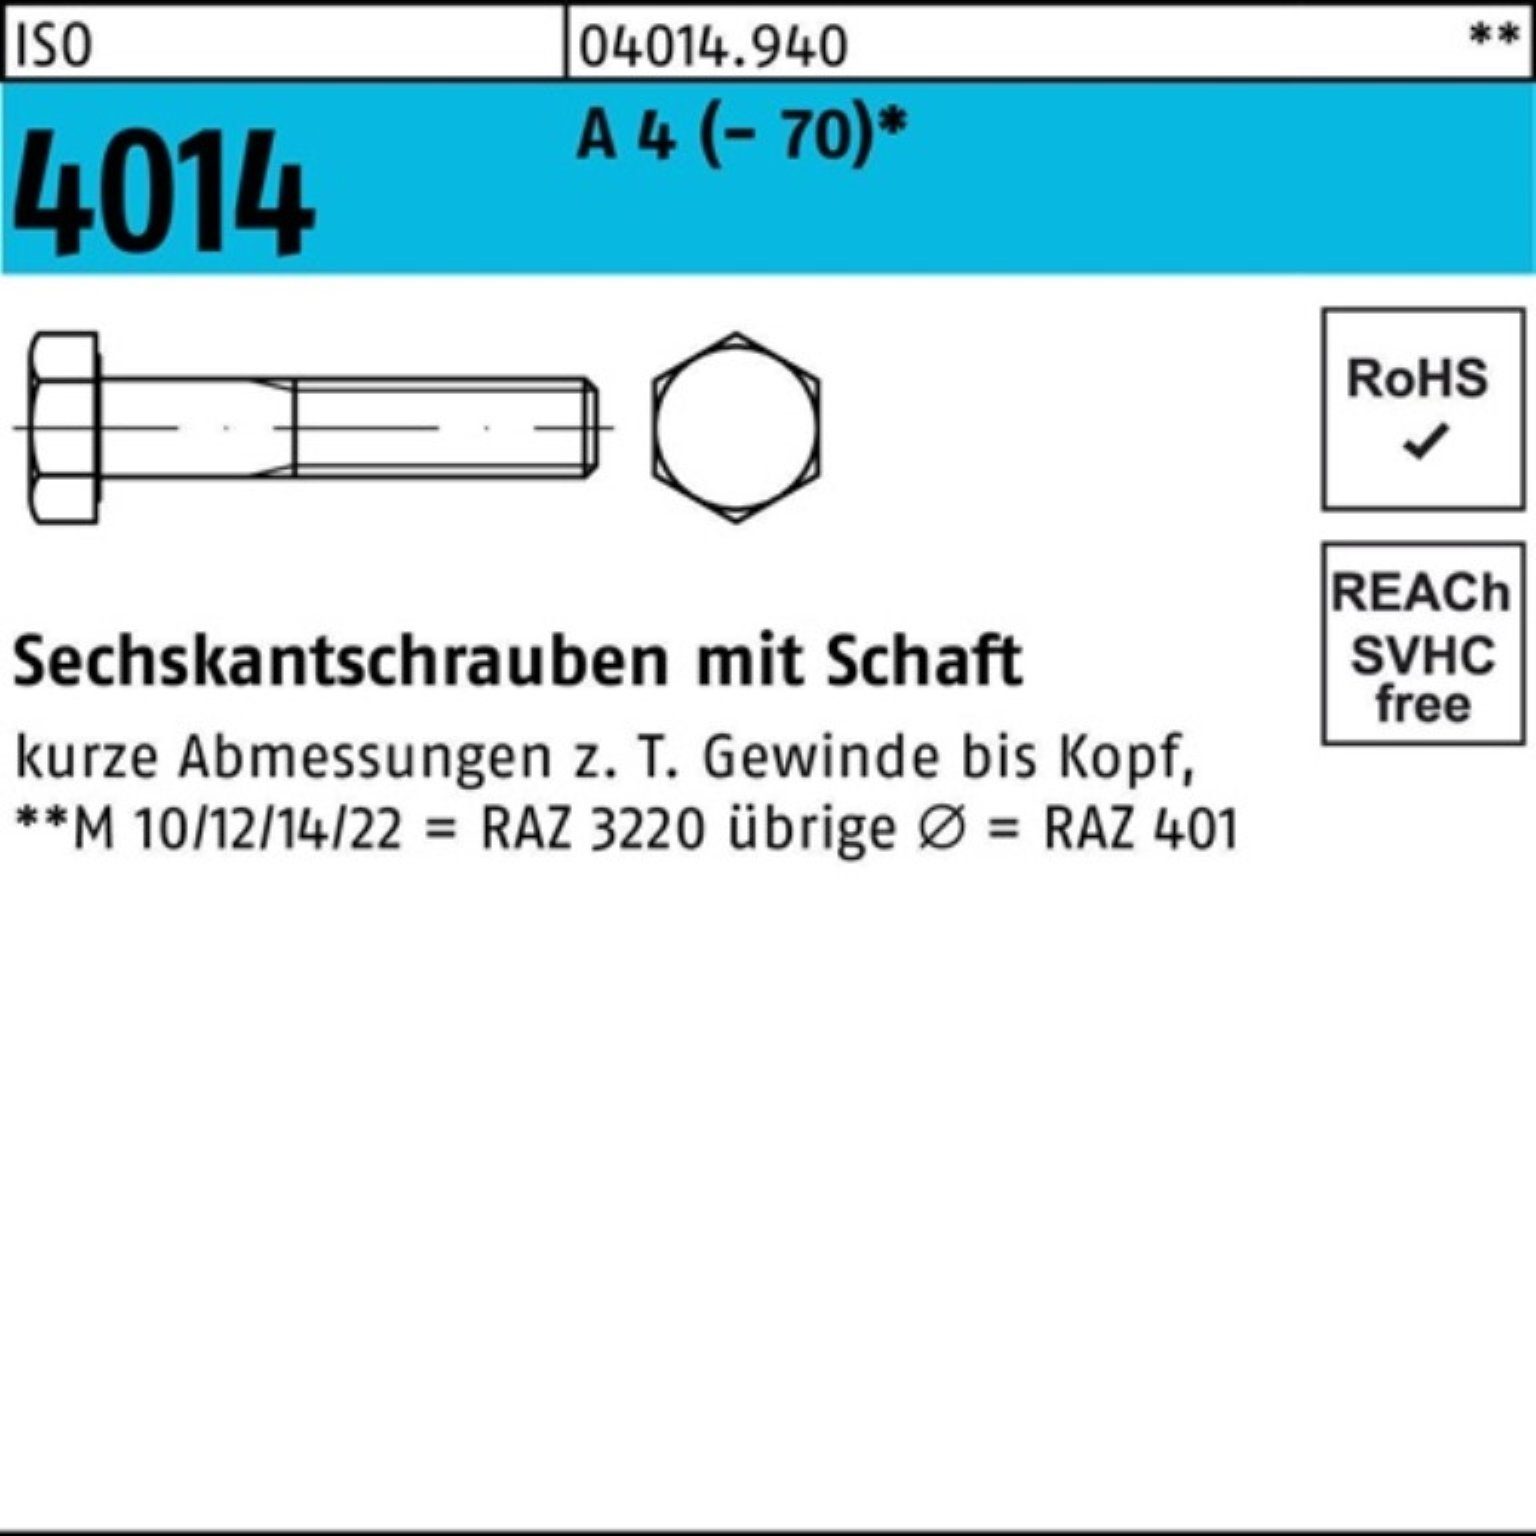 Bufab Sechskantschraube 100er Pack Sechskantschraube ISO 4014 Schaft M5x 90 A 4 (70) 100 St